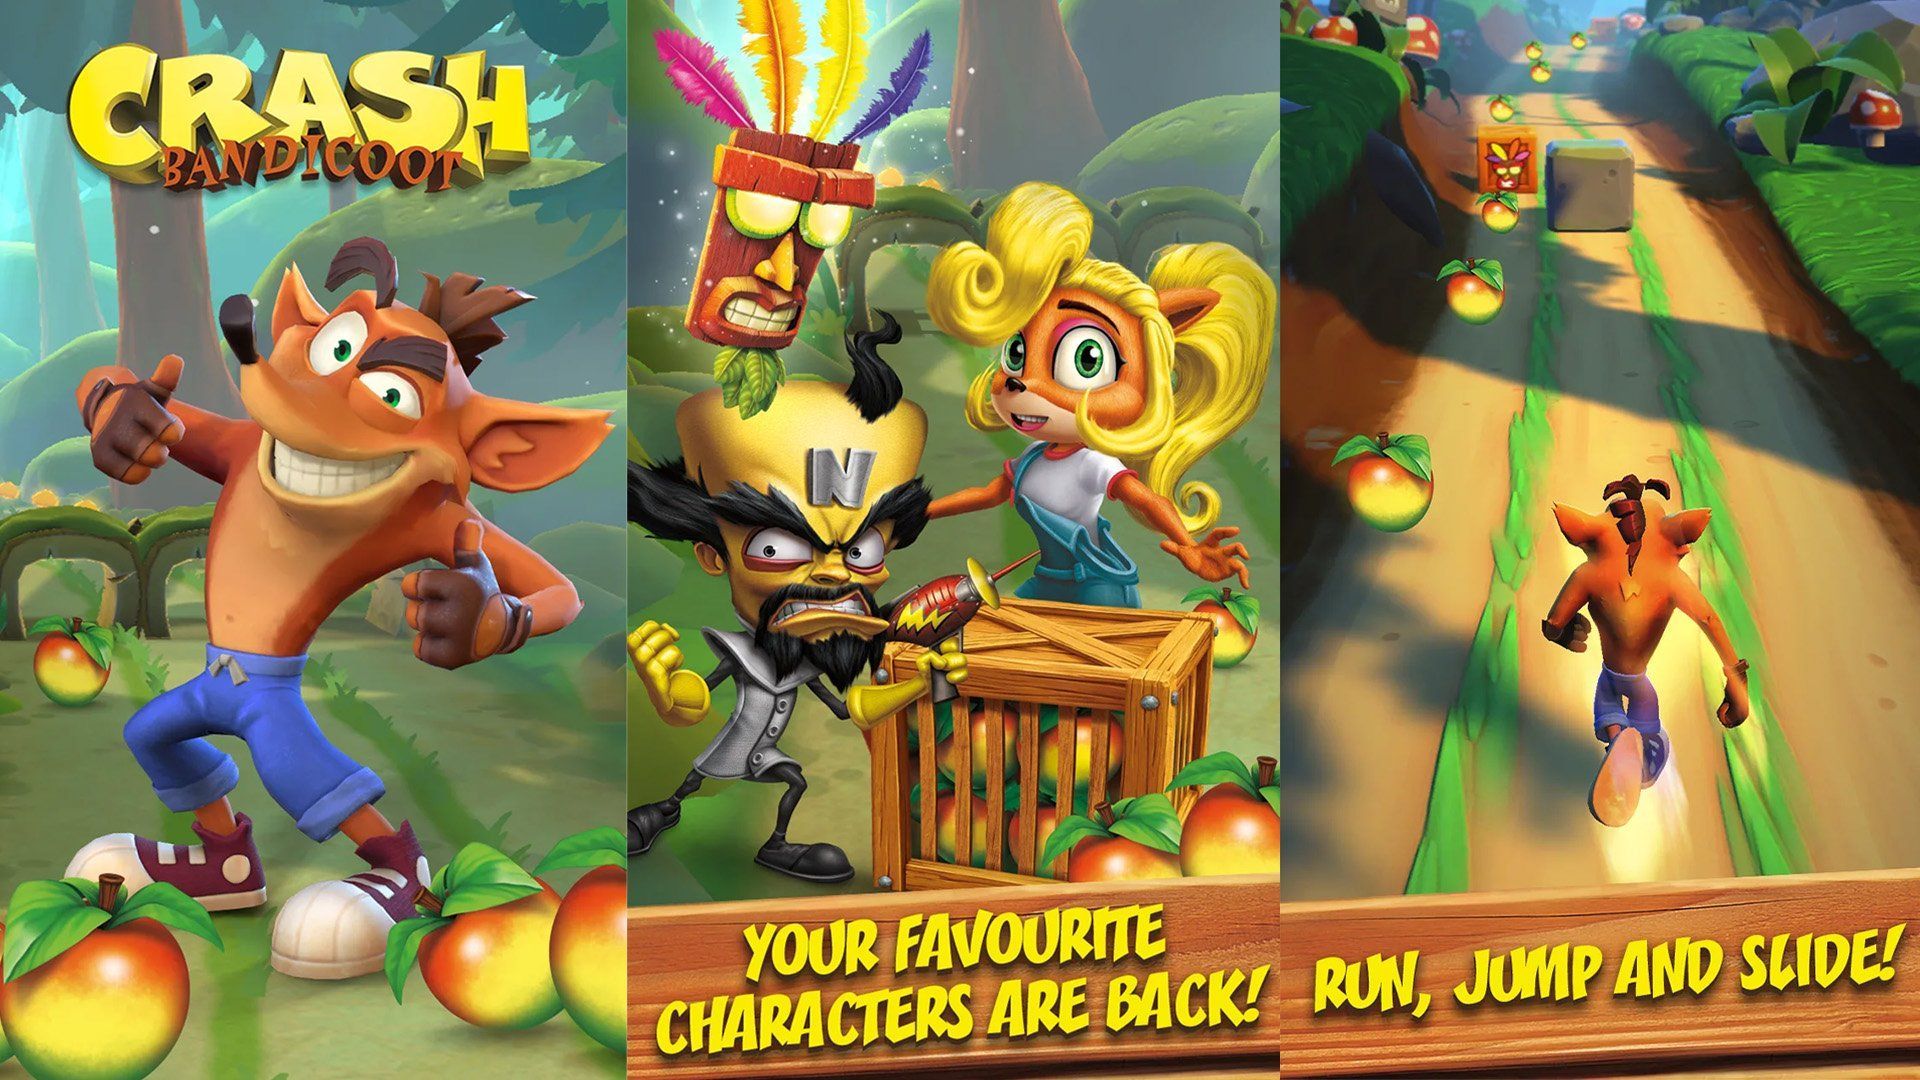 Un nouveau jeu Crash Bandicoot est annoncé sur mobile